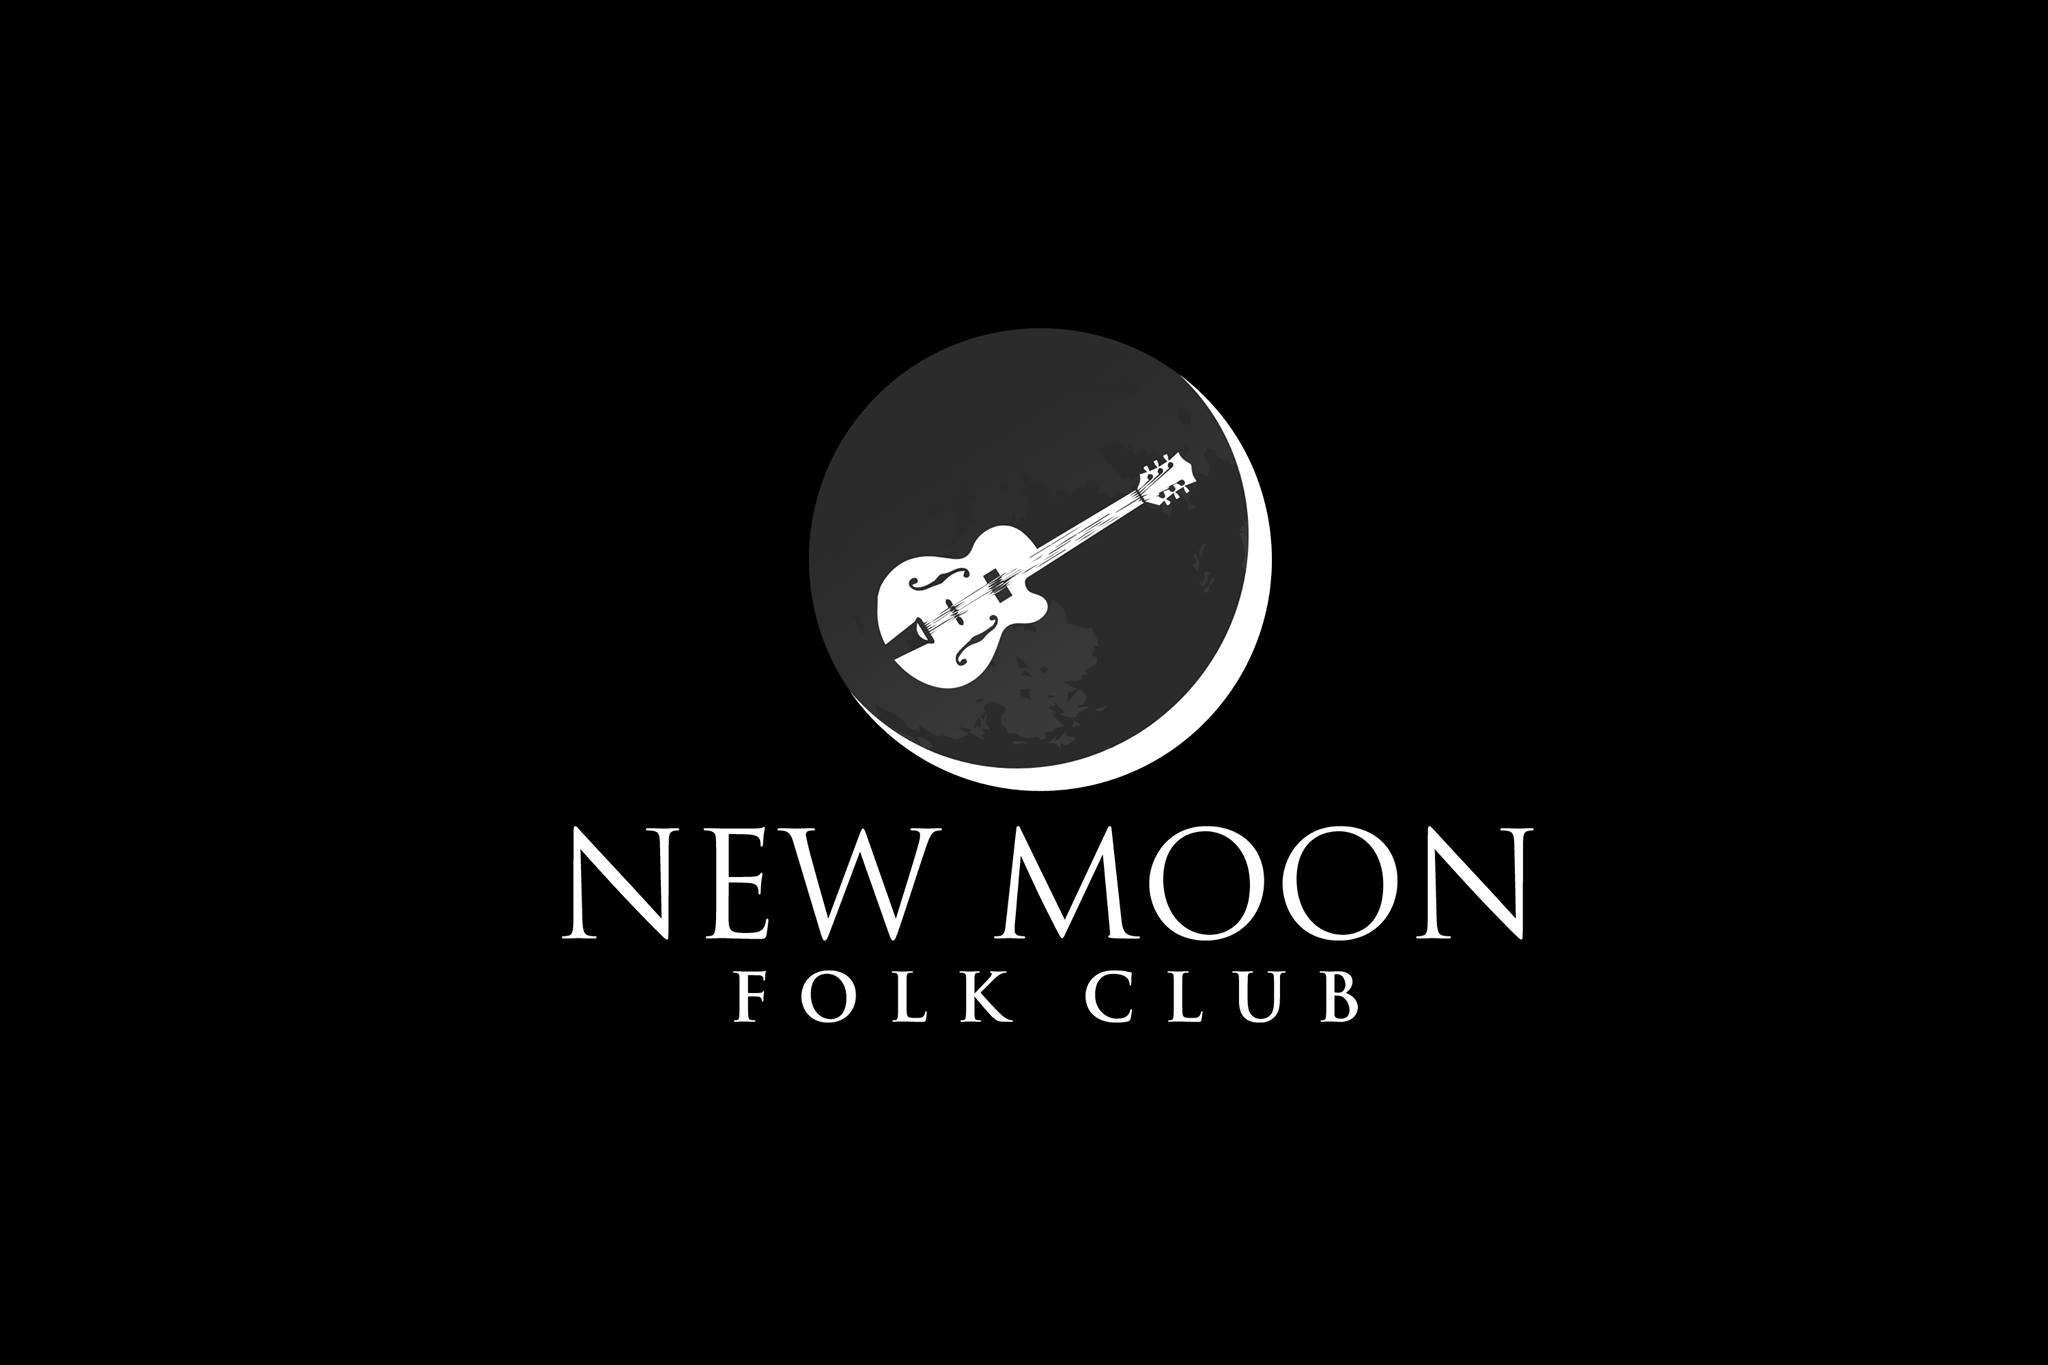 New Moon Folk Club